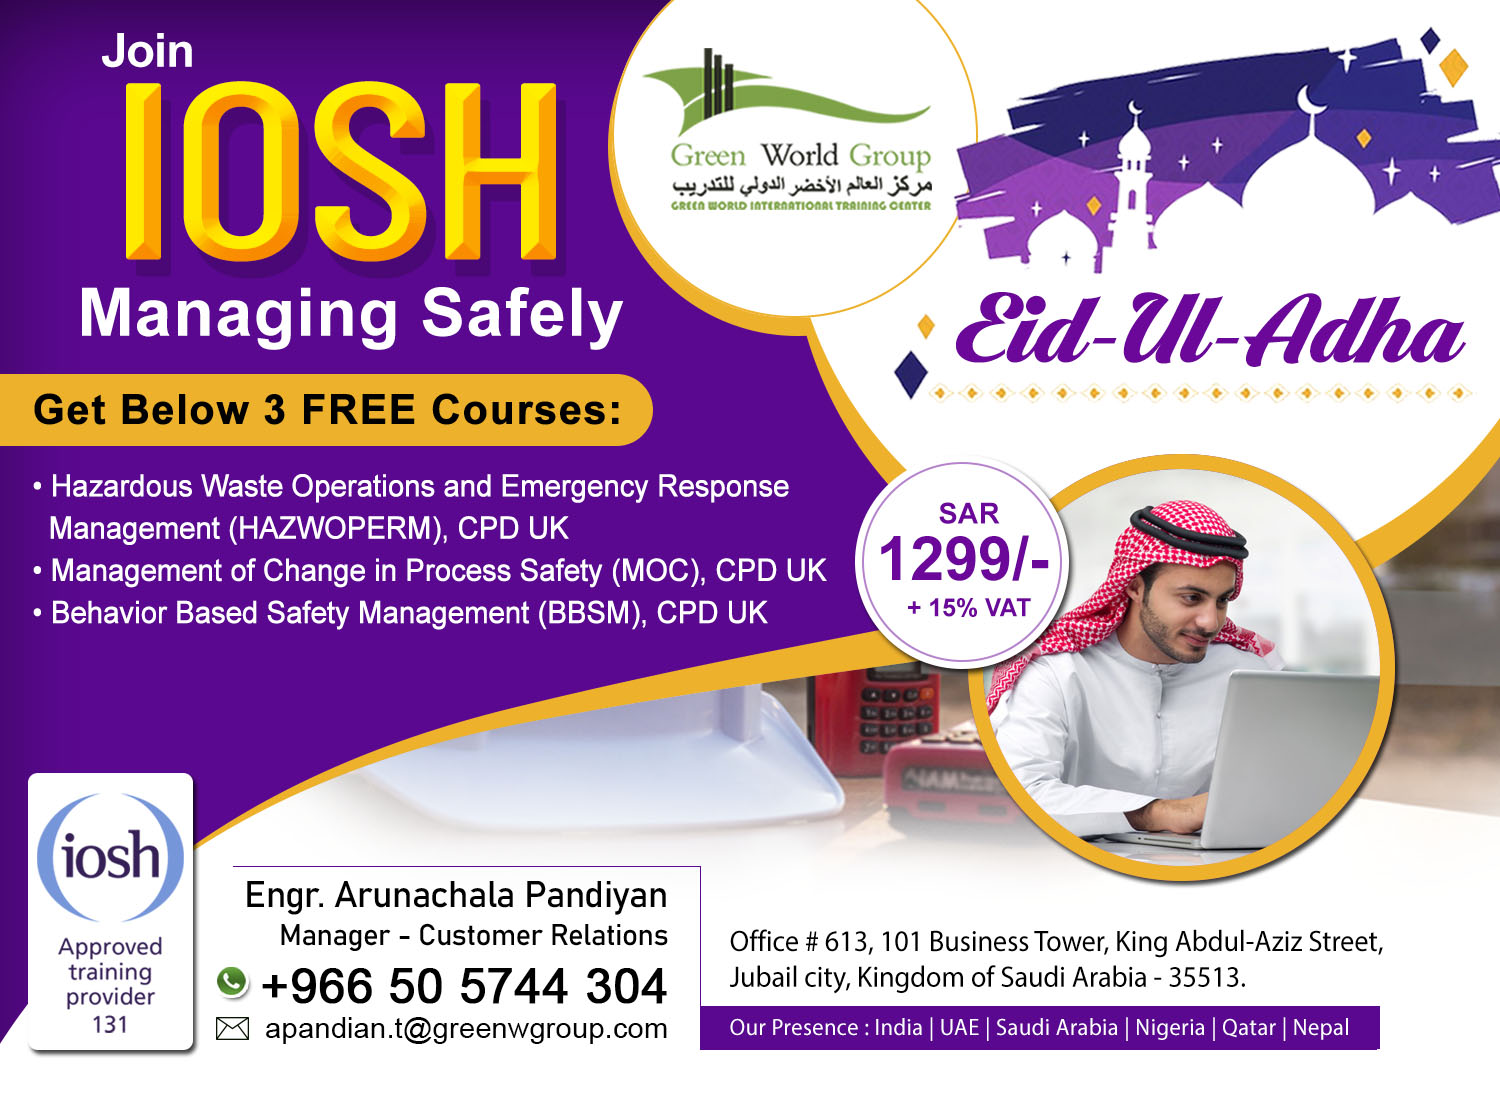 IOSH_MS_July_2020_KSA